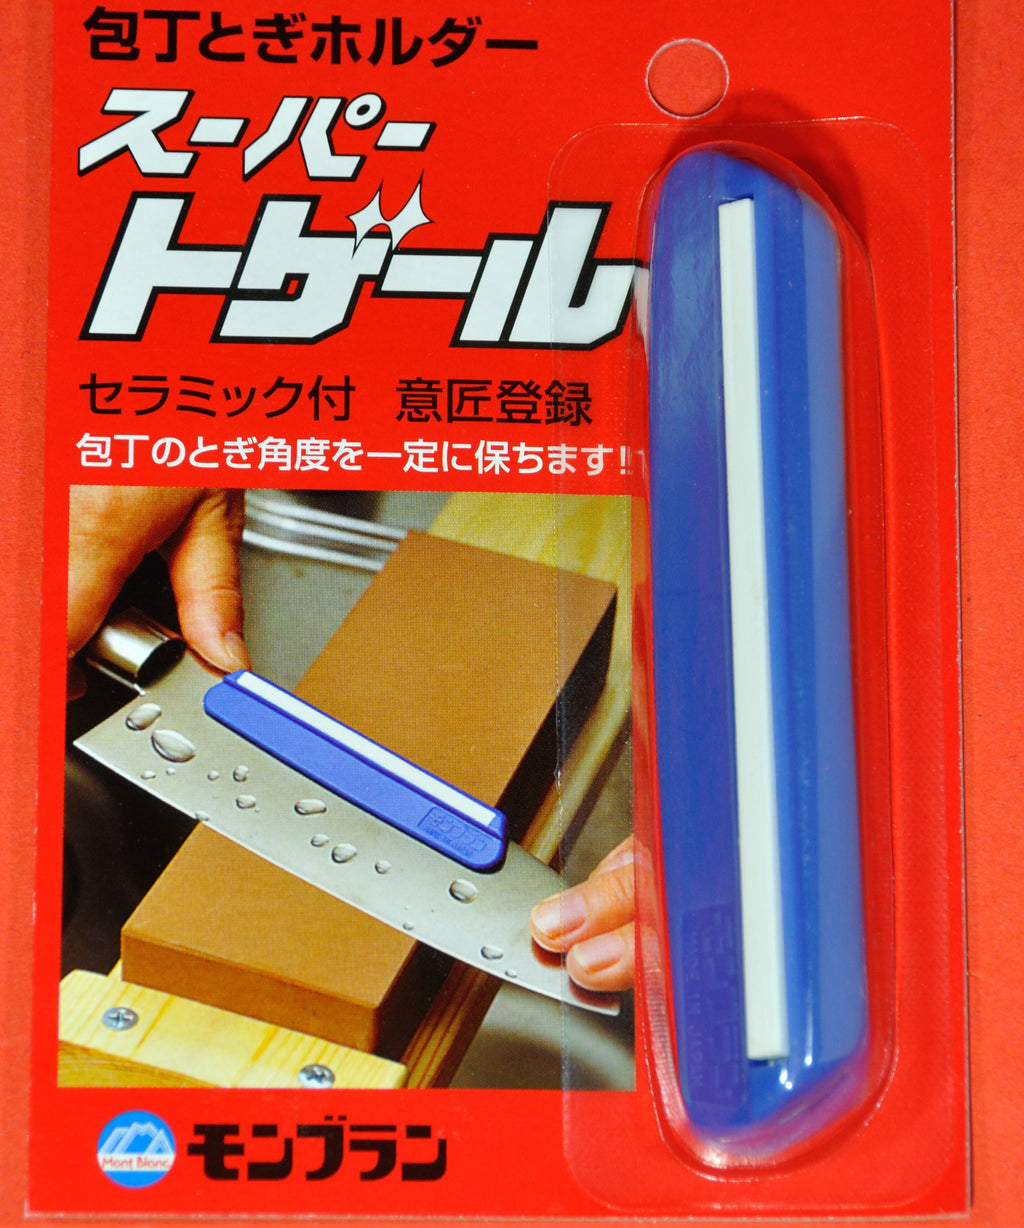 Керамическая направляющая для заточки ножей Япония Японский Японии